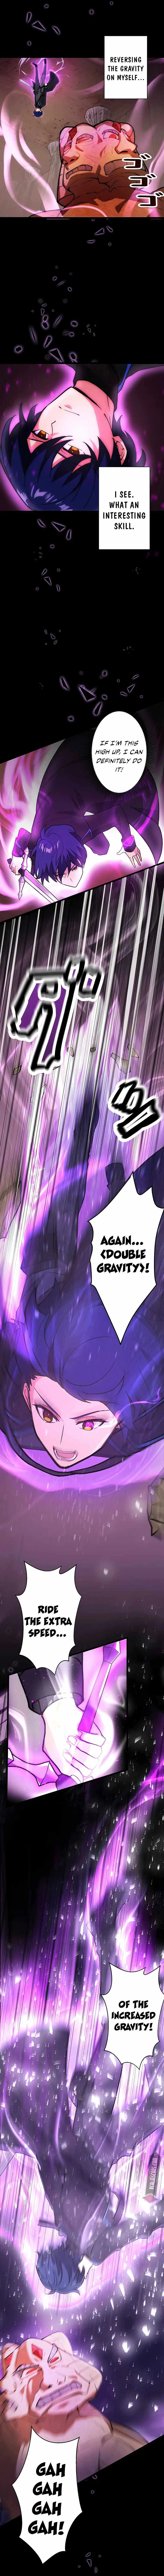 Reborn Ranker – Gravity User (Manga) Chapter 7